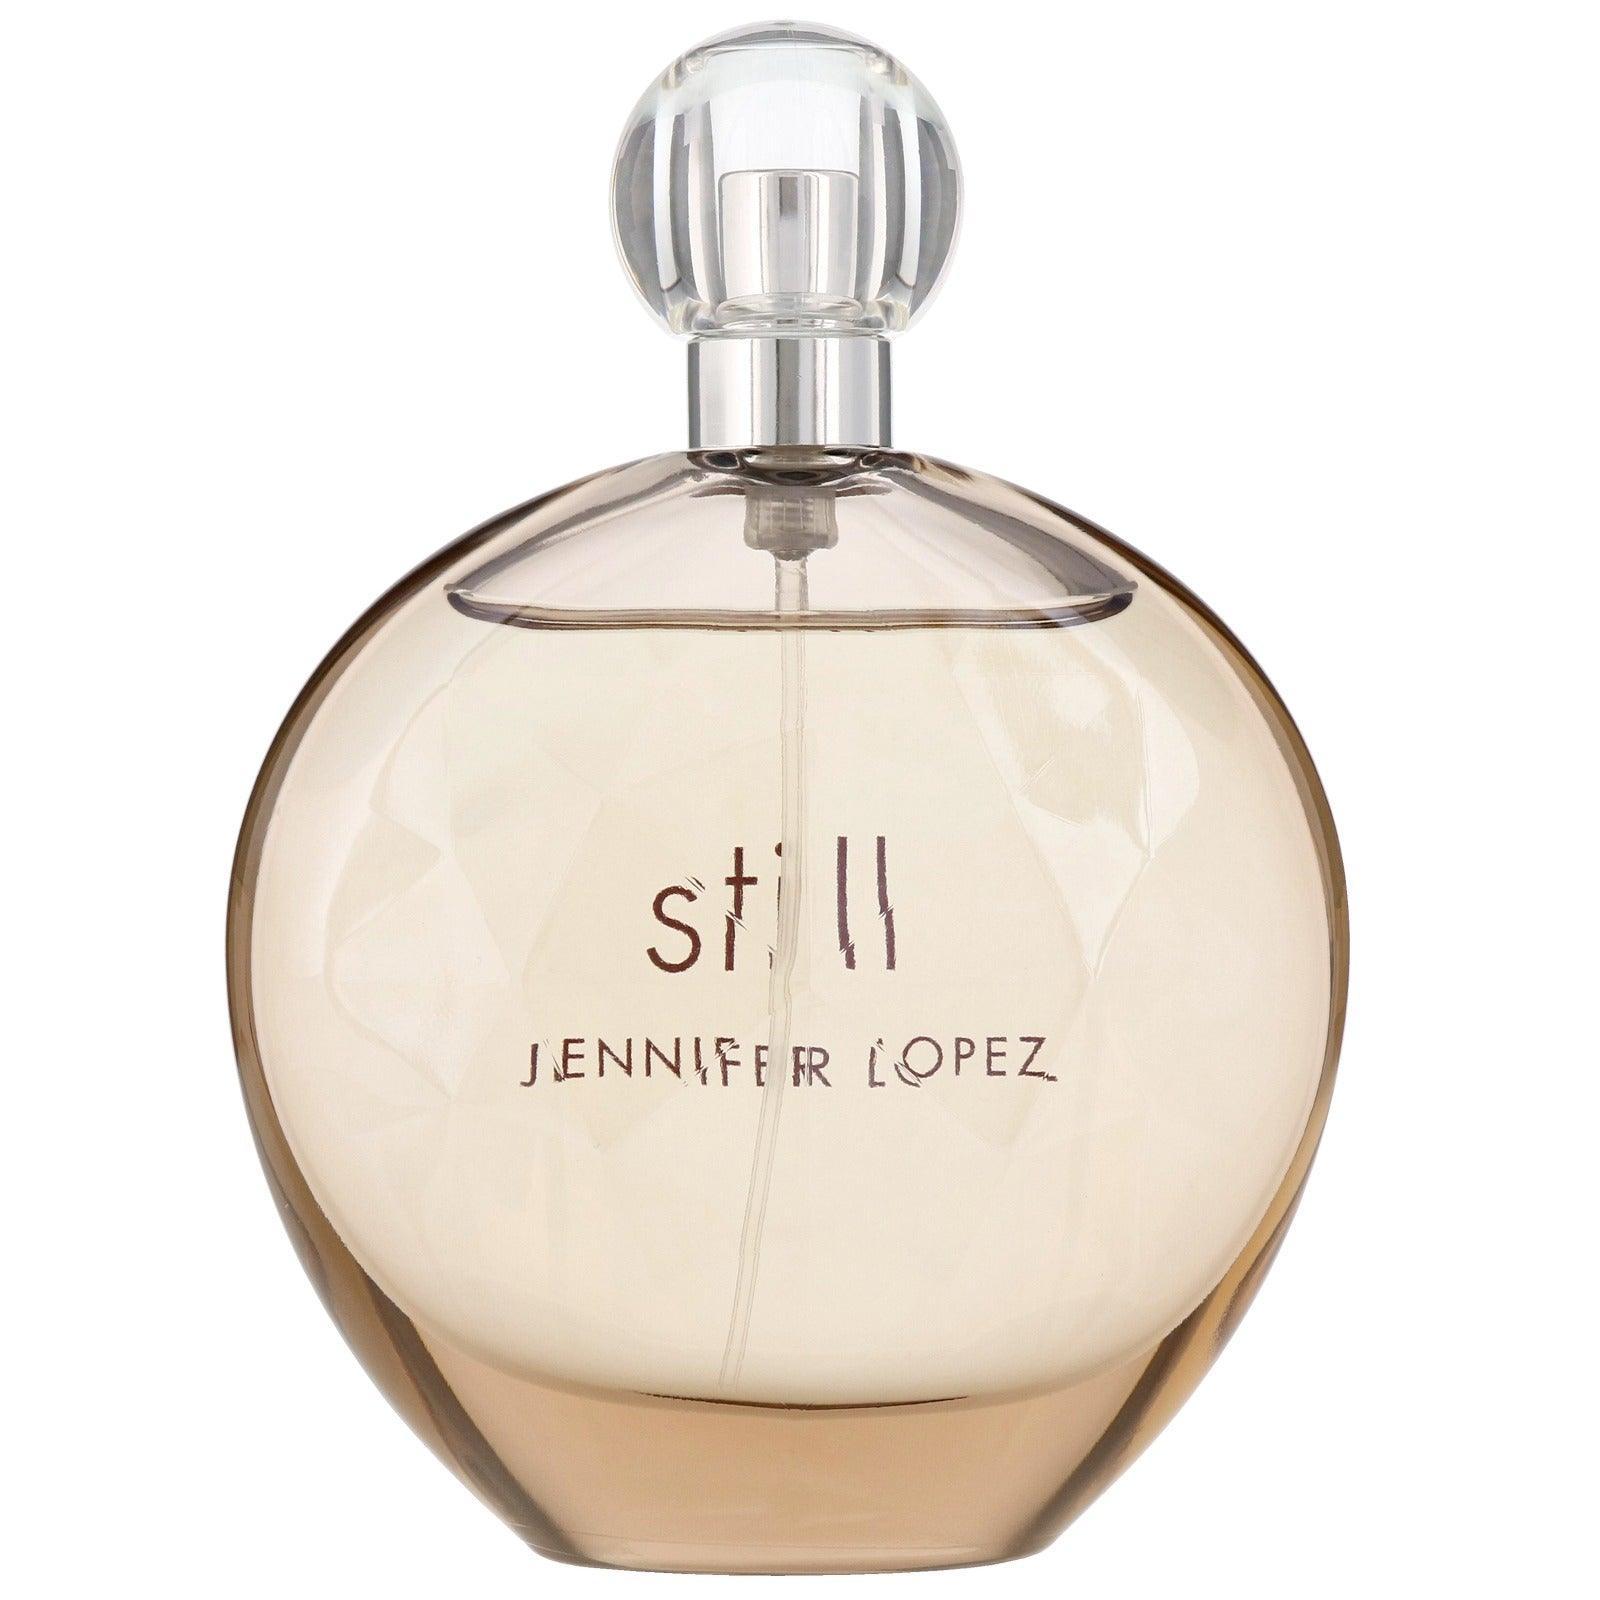 Jennifer Lopez Still - ScentsForever